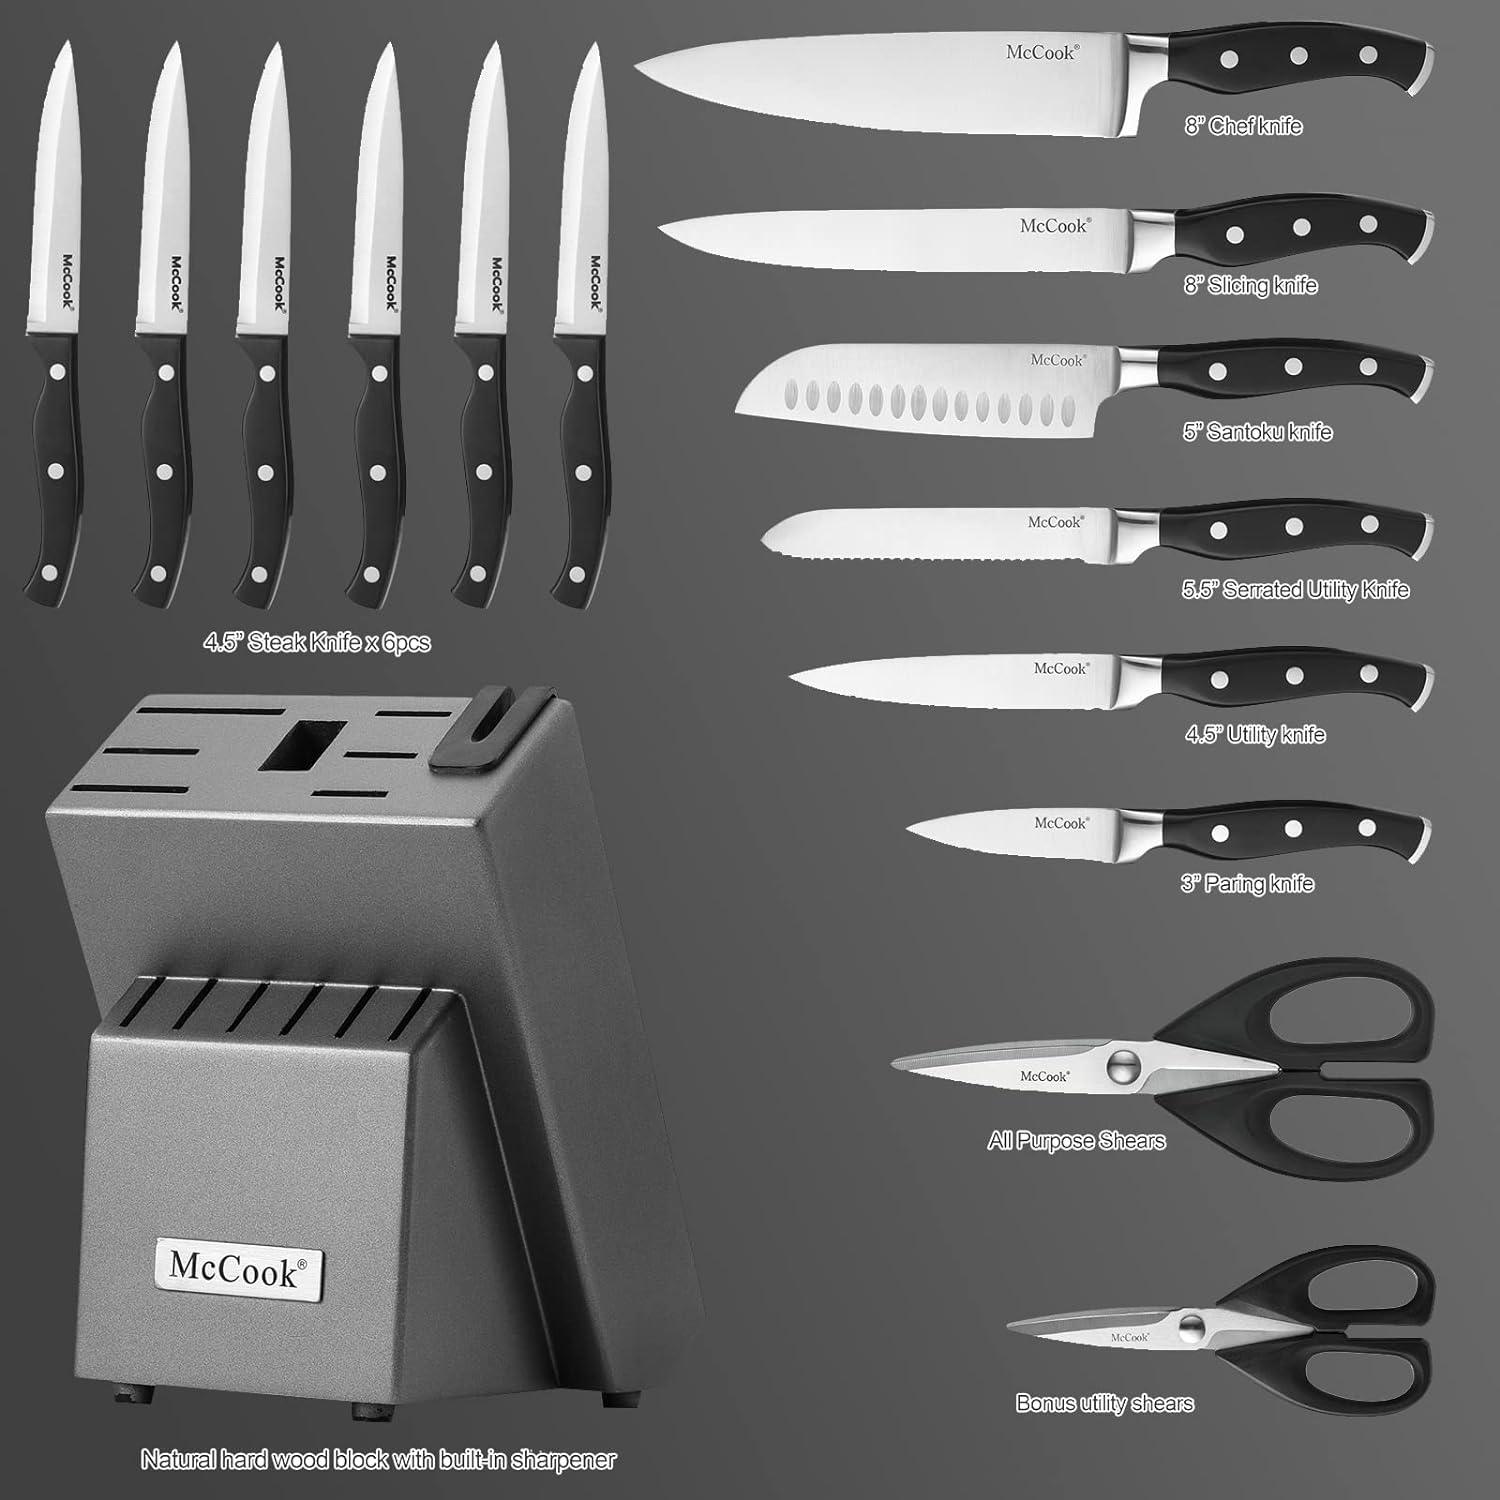 Astercook Knife Set, 15-Piece Kitchen Knife Set with Block, Built-in Knife  Sharpener, German Stainless Steel Knife Block Set, Dishwasher Safe